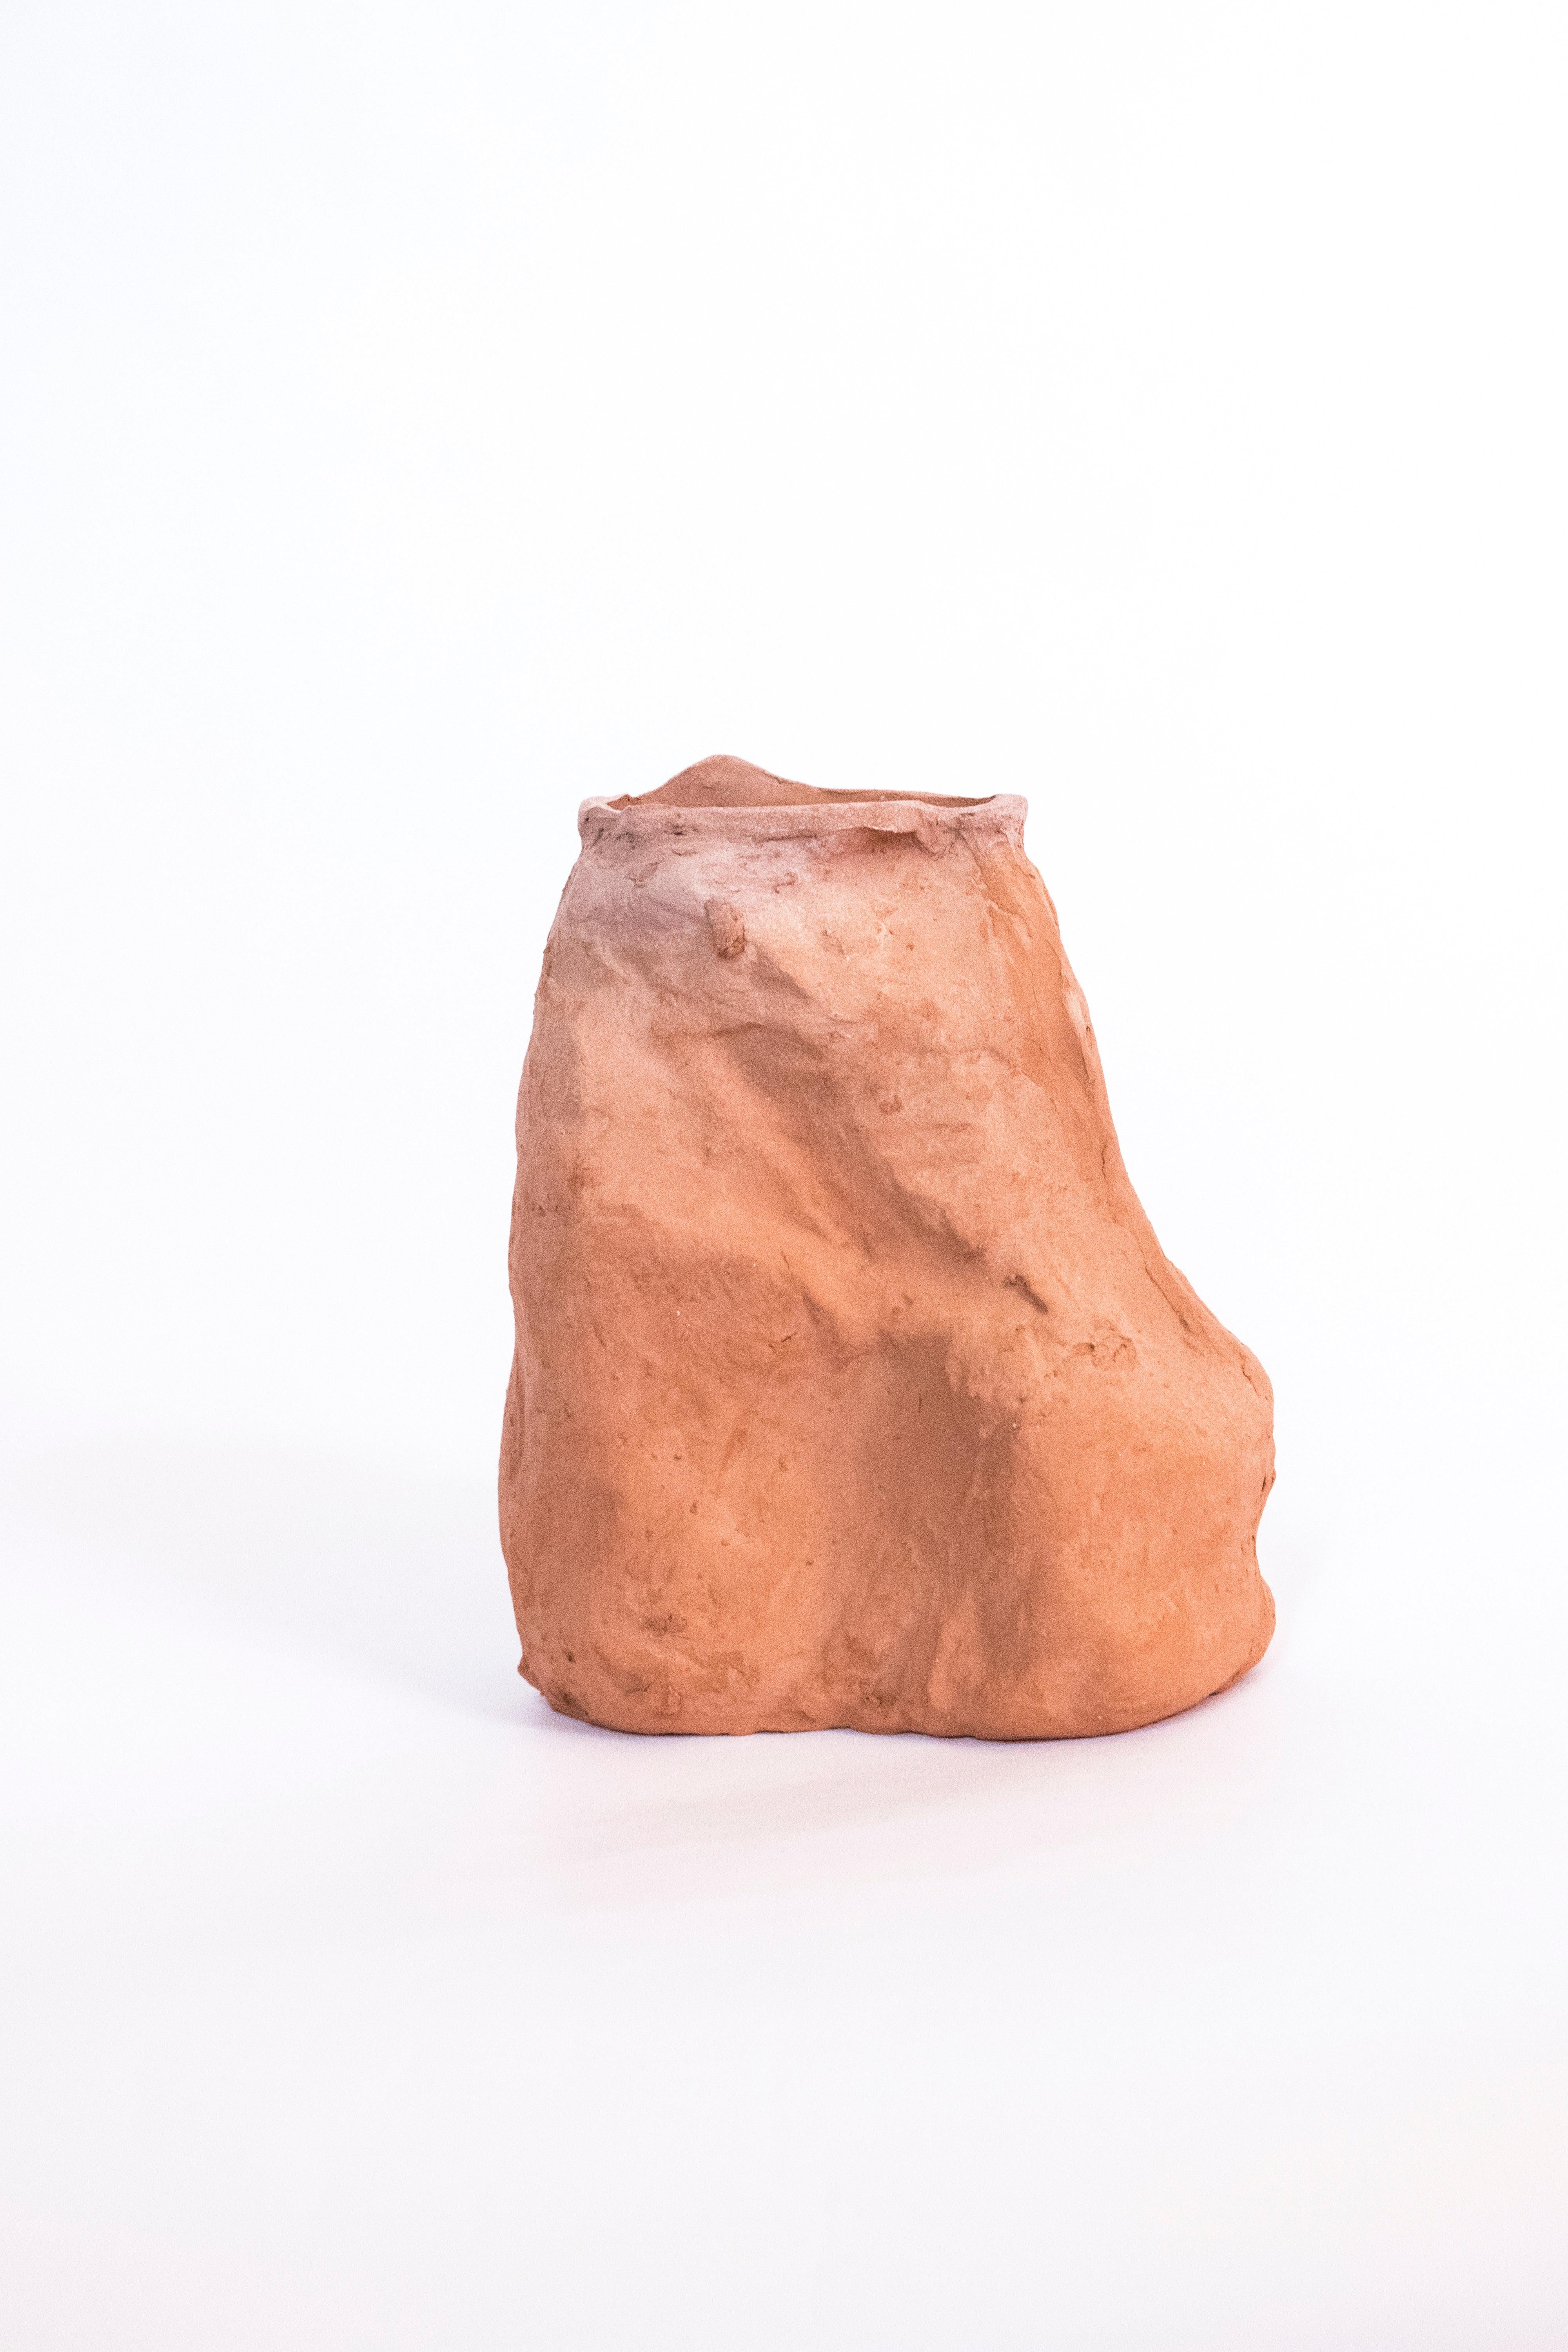 Gaïamorphisme, vase organique unique, Aurore
Mesures : 14 x 11 x 7 cm

Implanté dans l'estuaire de la Gironde, le procédé Gaïamorphisme incarne la topographie locale à travers la matière première disponible en utilisant des techniques céramiques